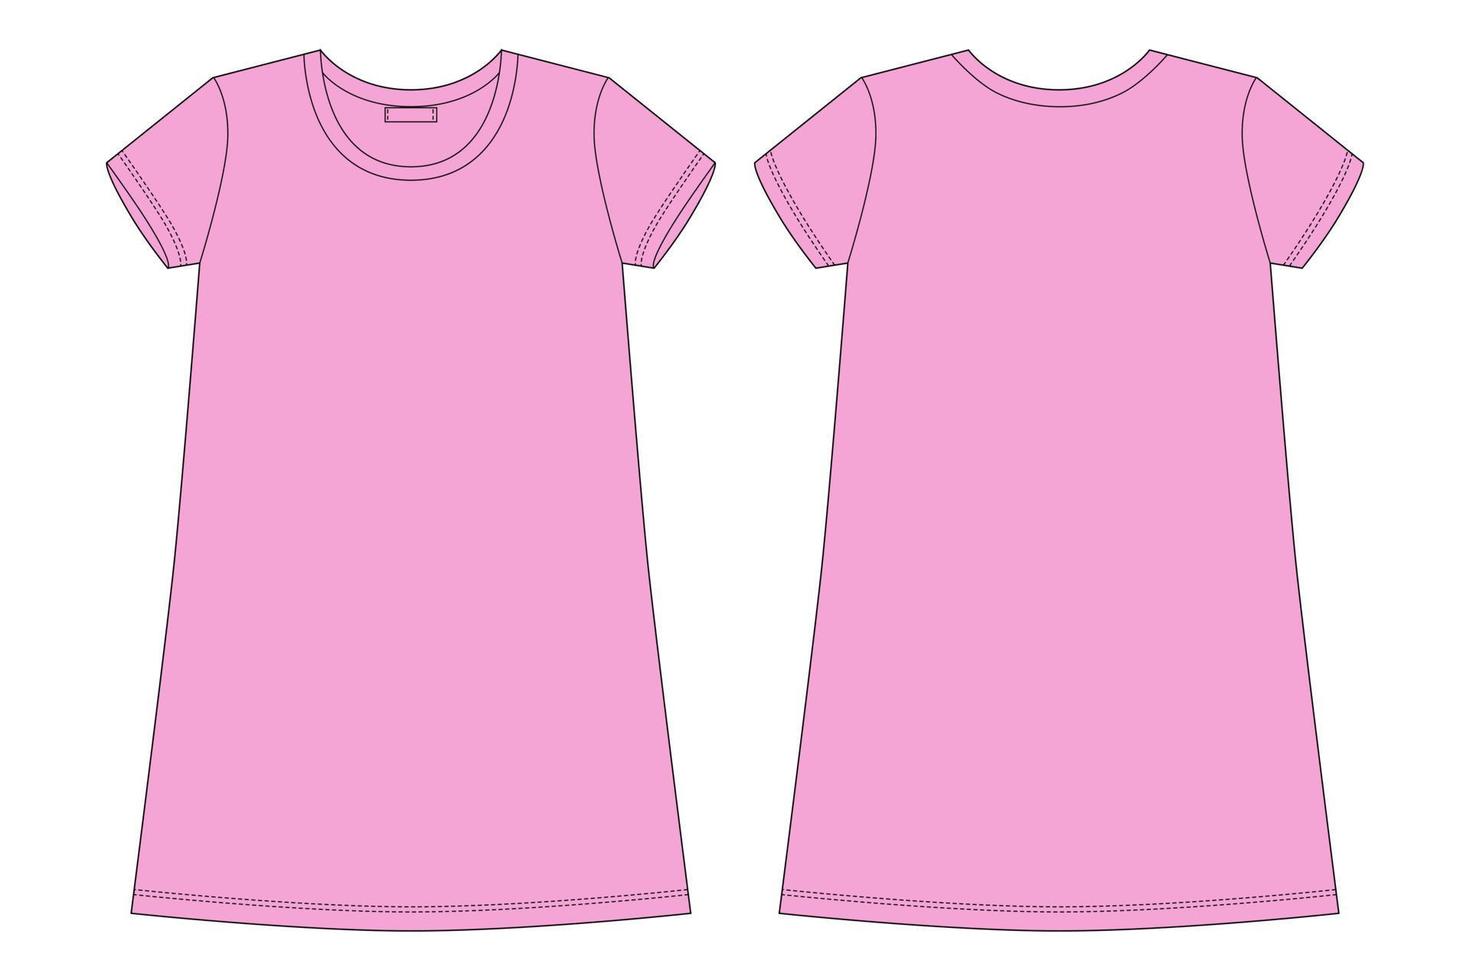 croquis technique de la chemise en coton. couleur rose. chemise de nuit pour femme. vecteur